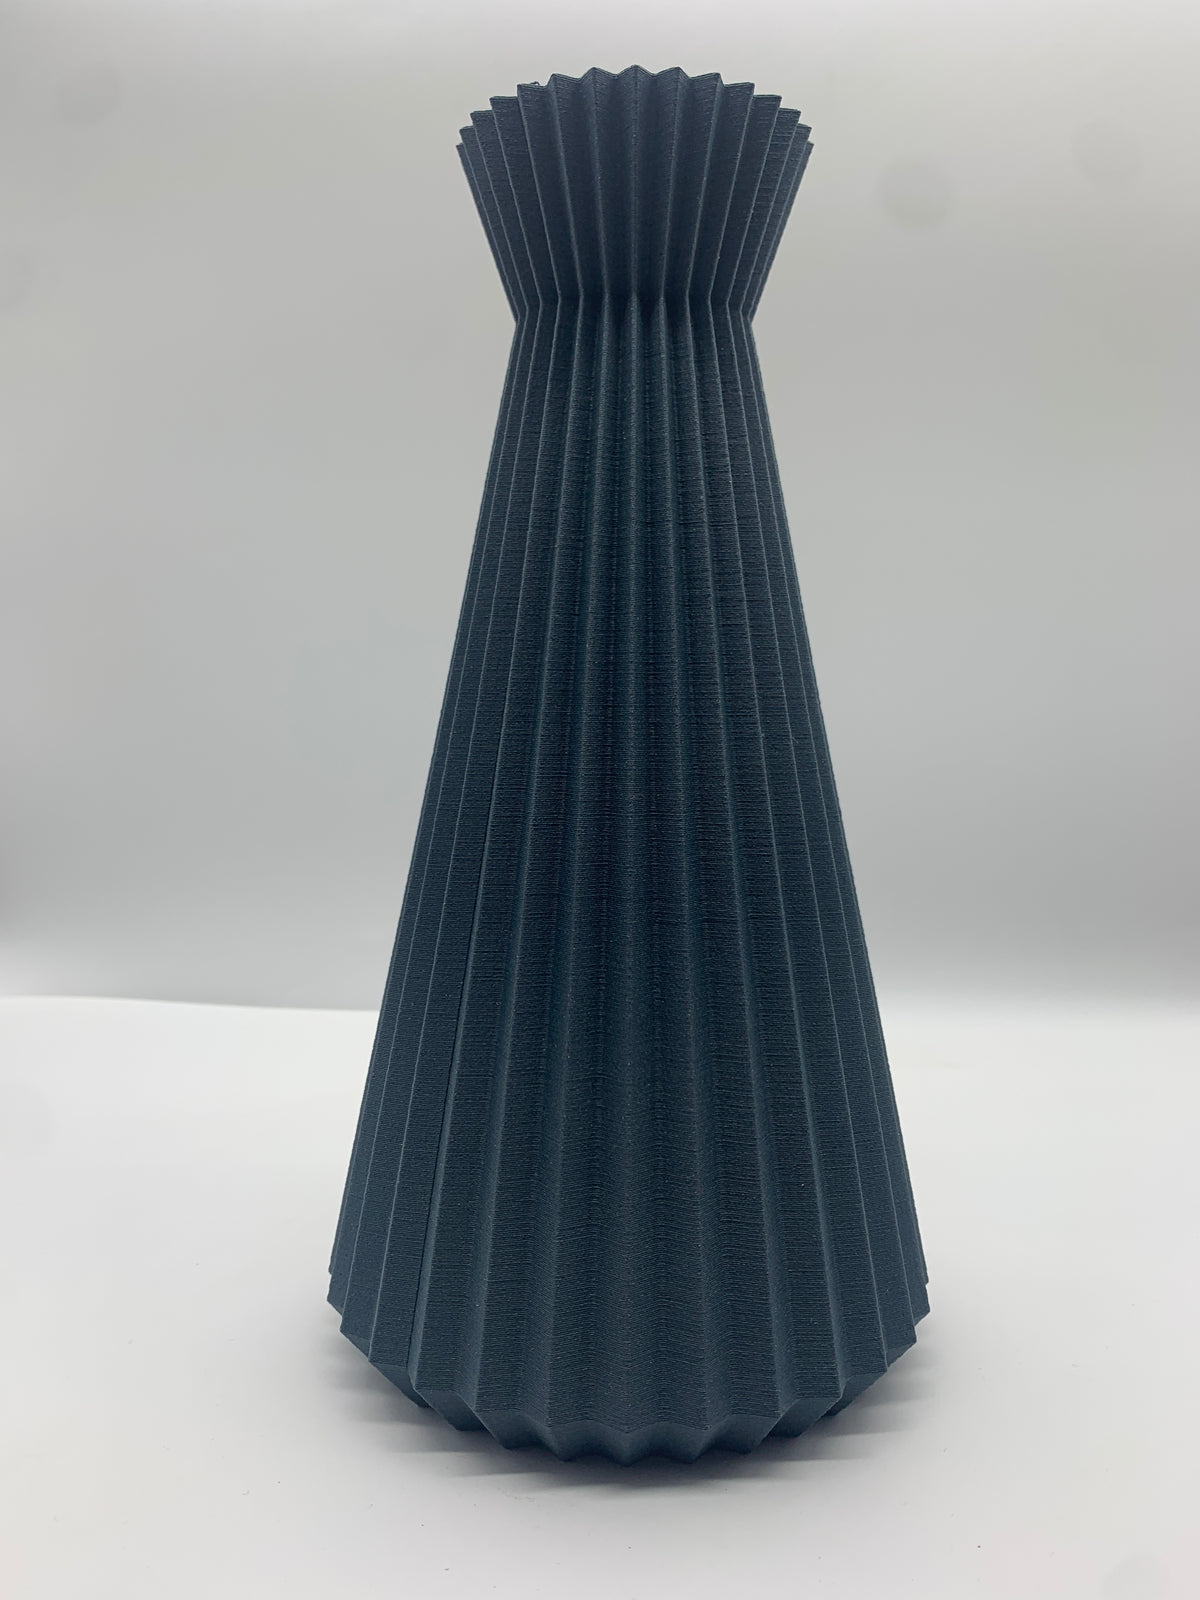 Minimum Design | Ishi Vase